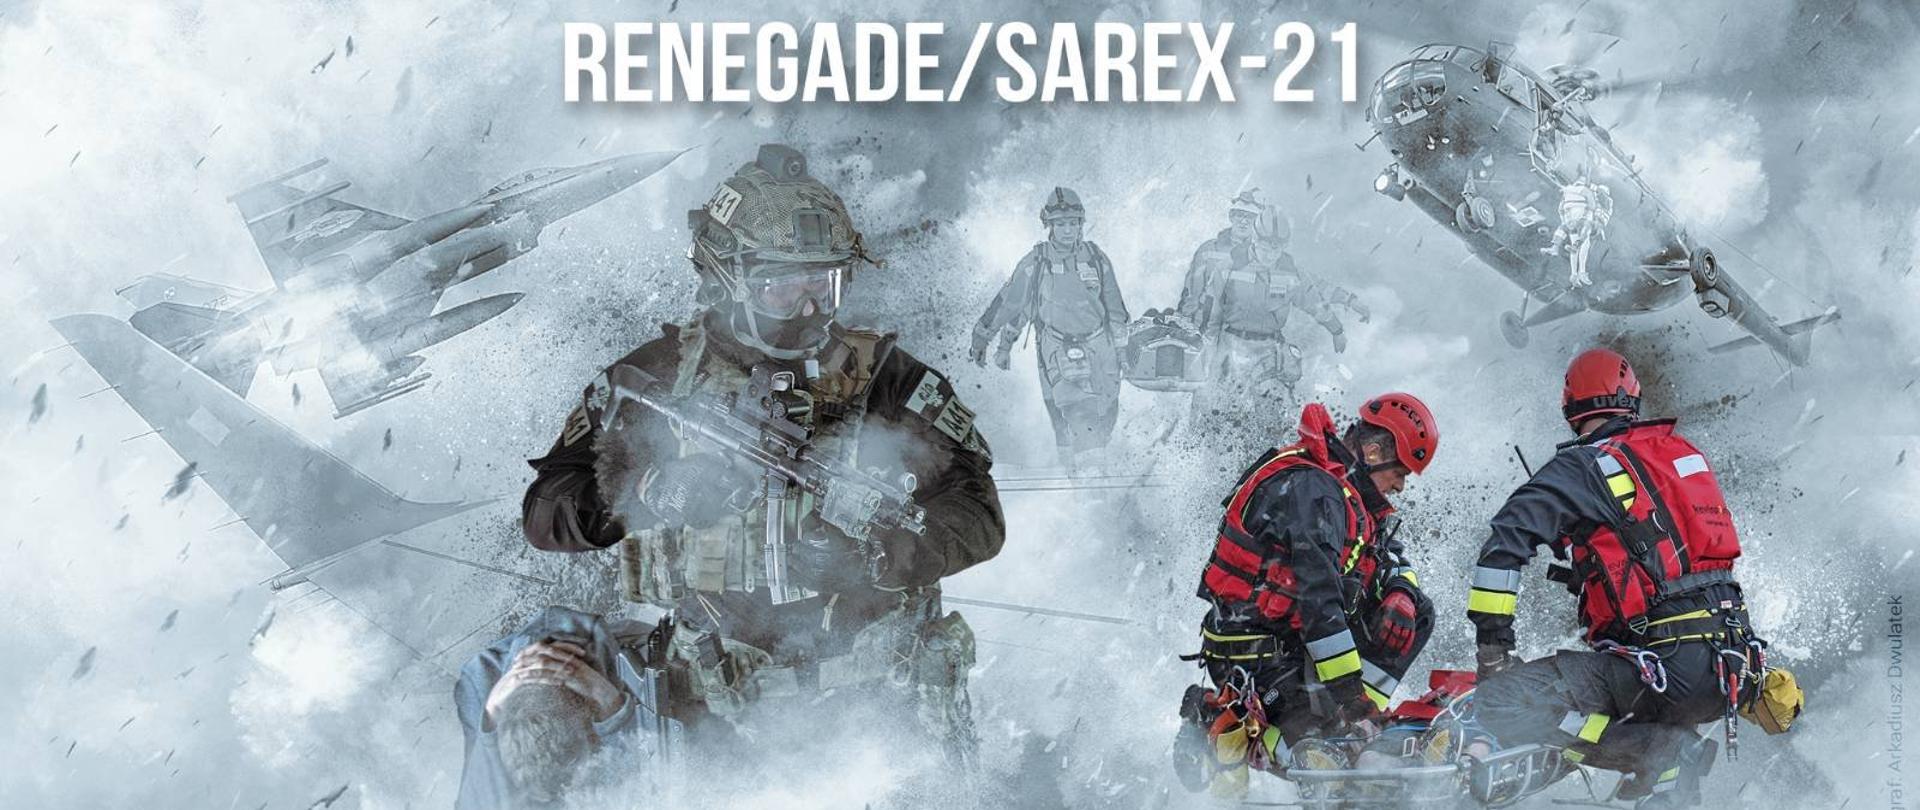 baner: ćwiczenia RENEGADE/SAREX-21